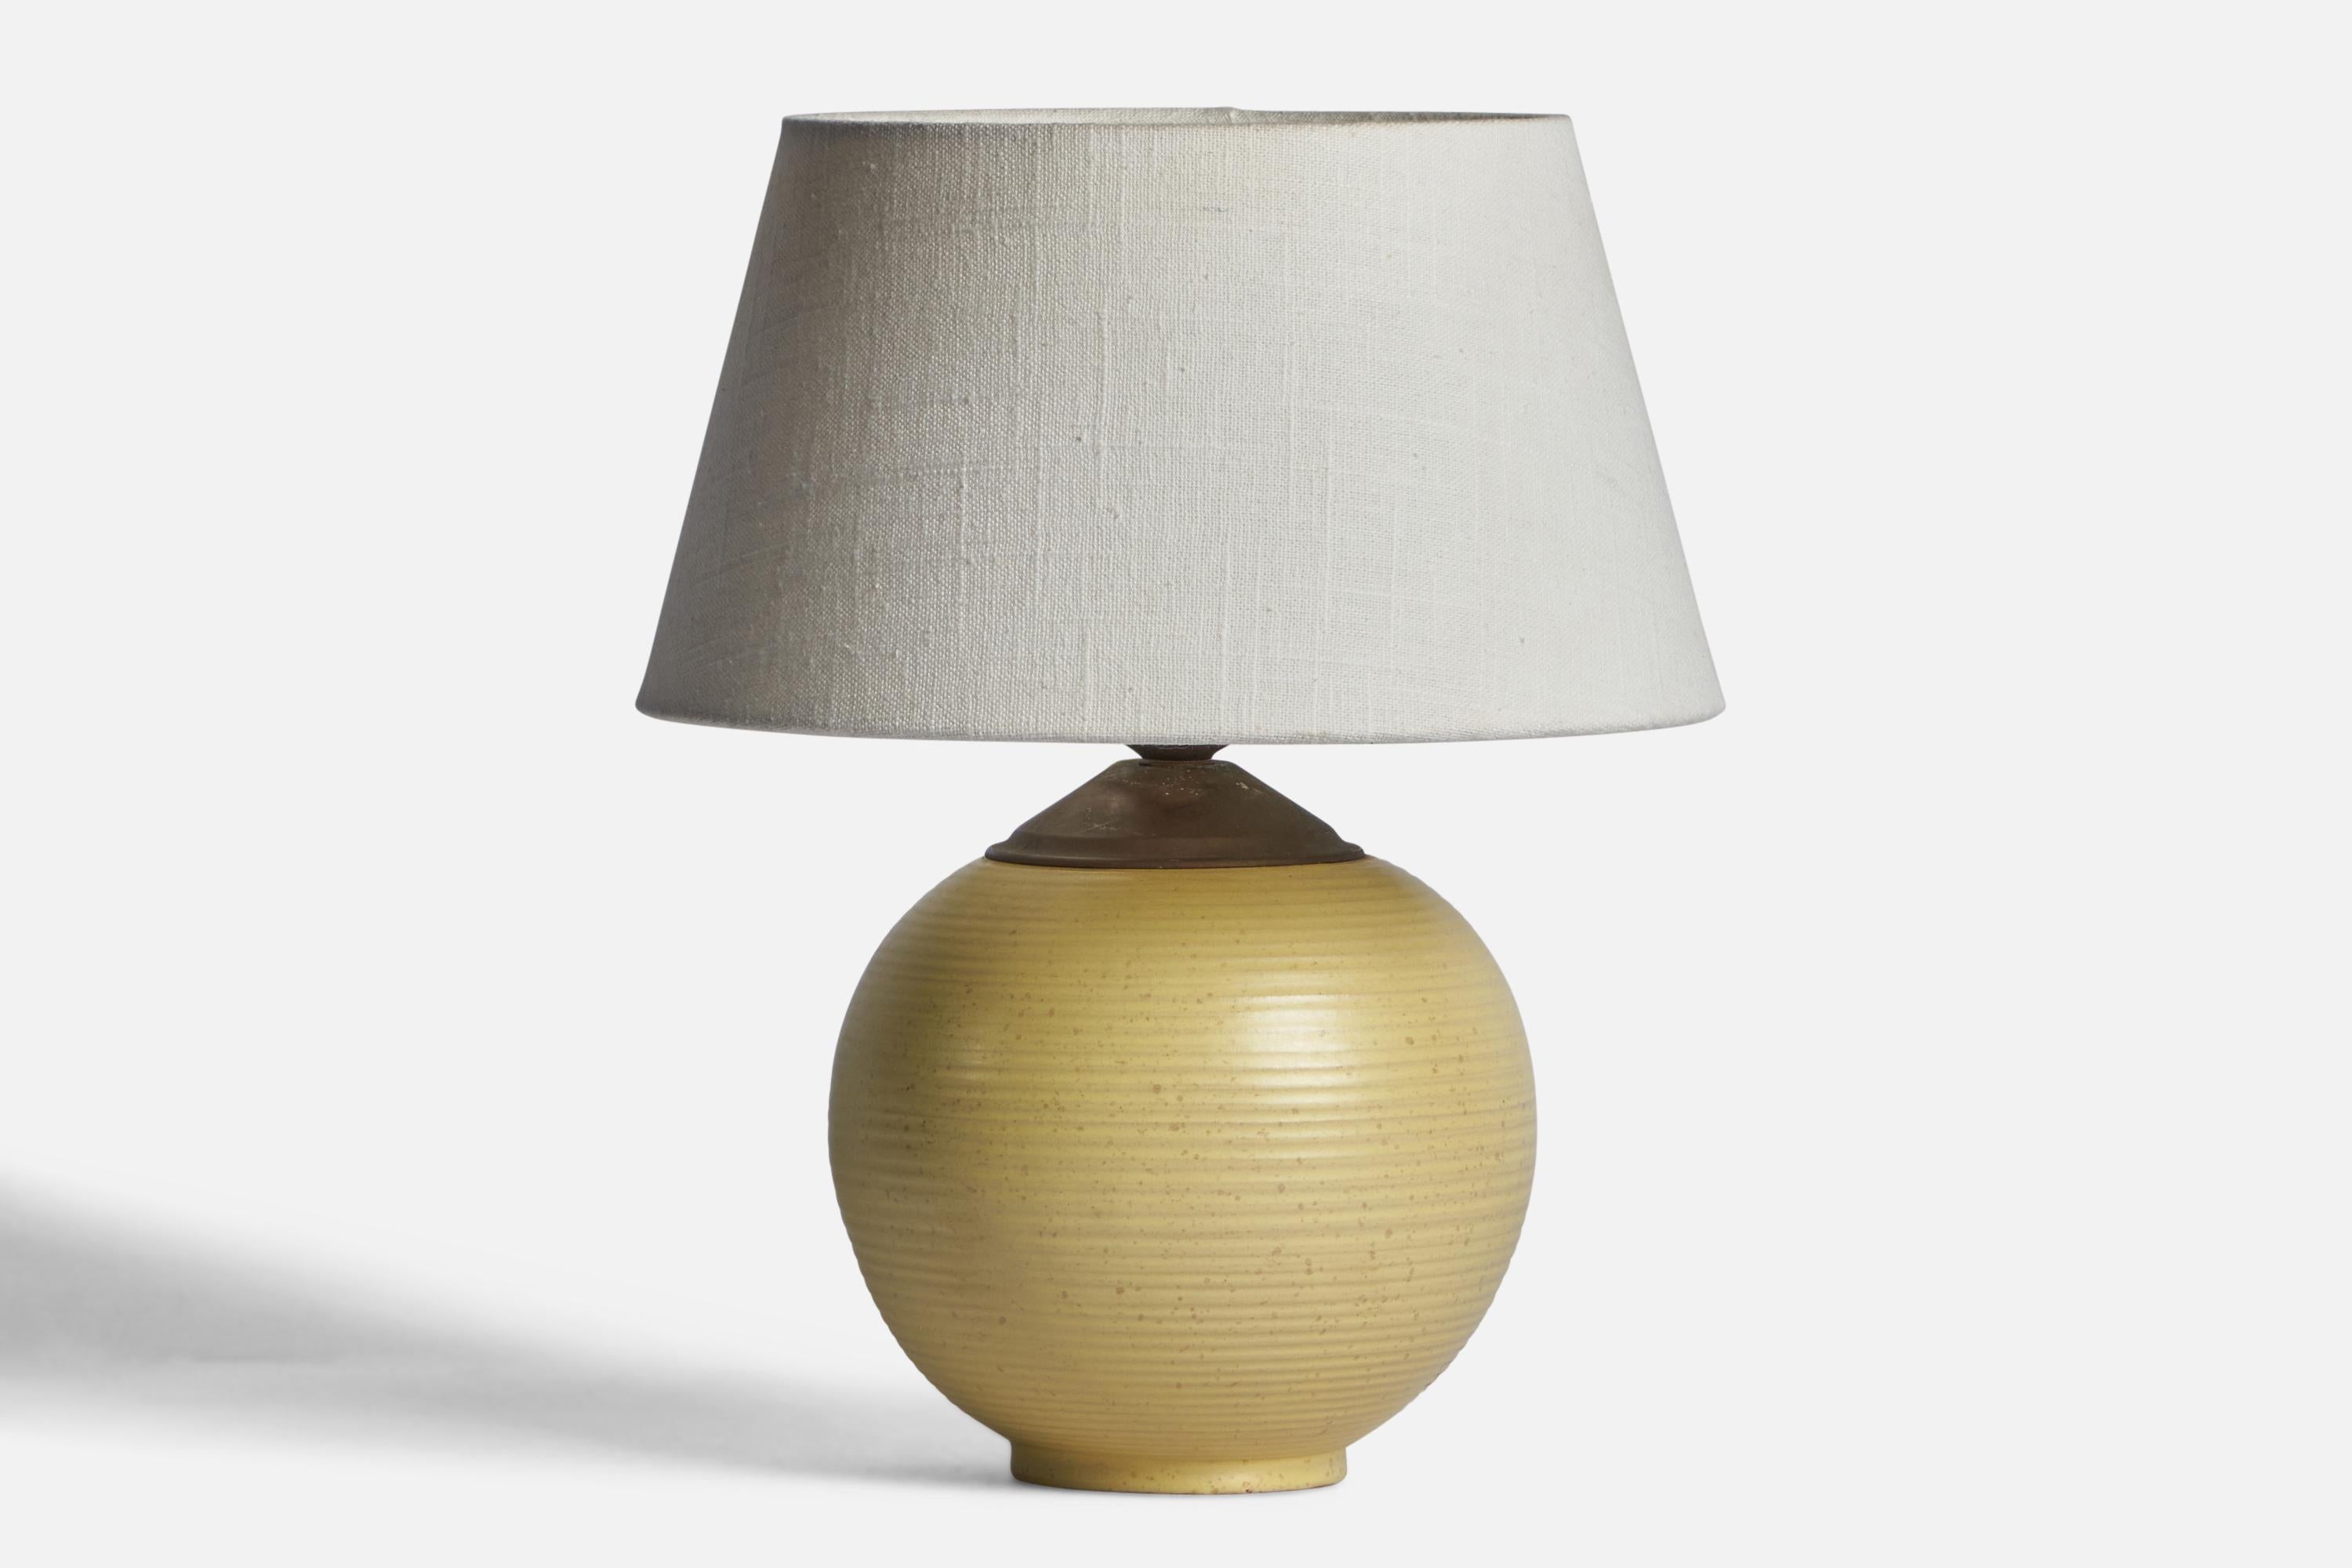 Lampe de table en faïence émaillée jaune et en laiton, conçue et produite par Upsala Ekeby, années 1930. 

Dimensions de la lampe (pouces) : 9.75